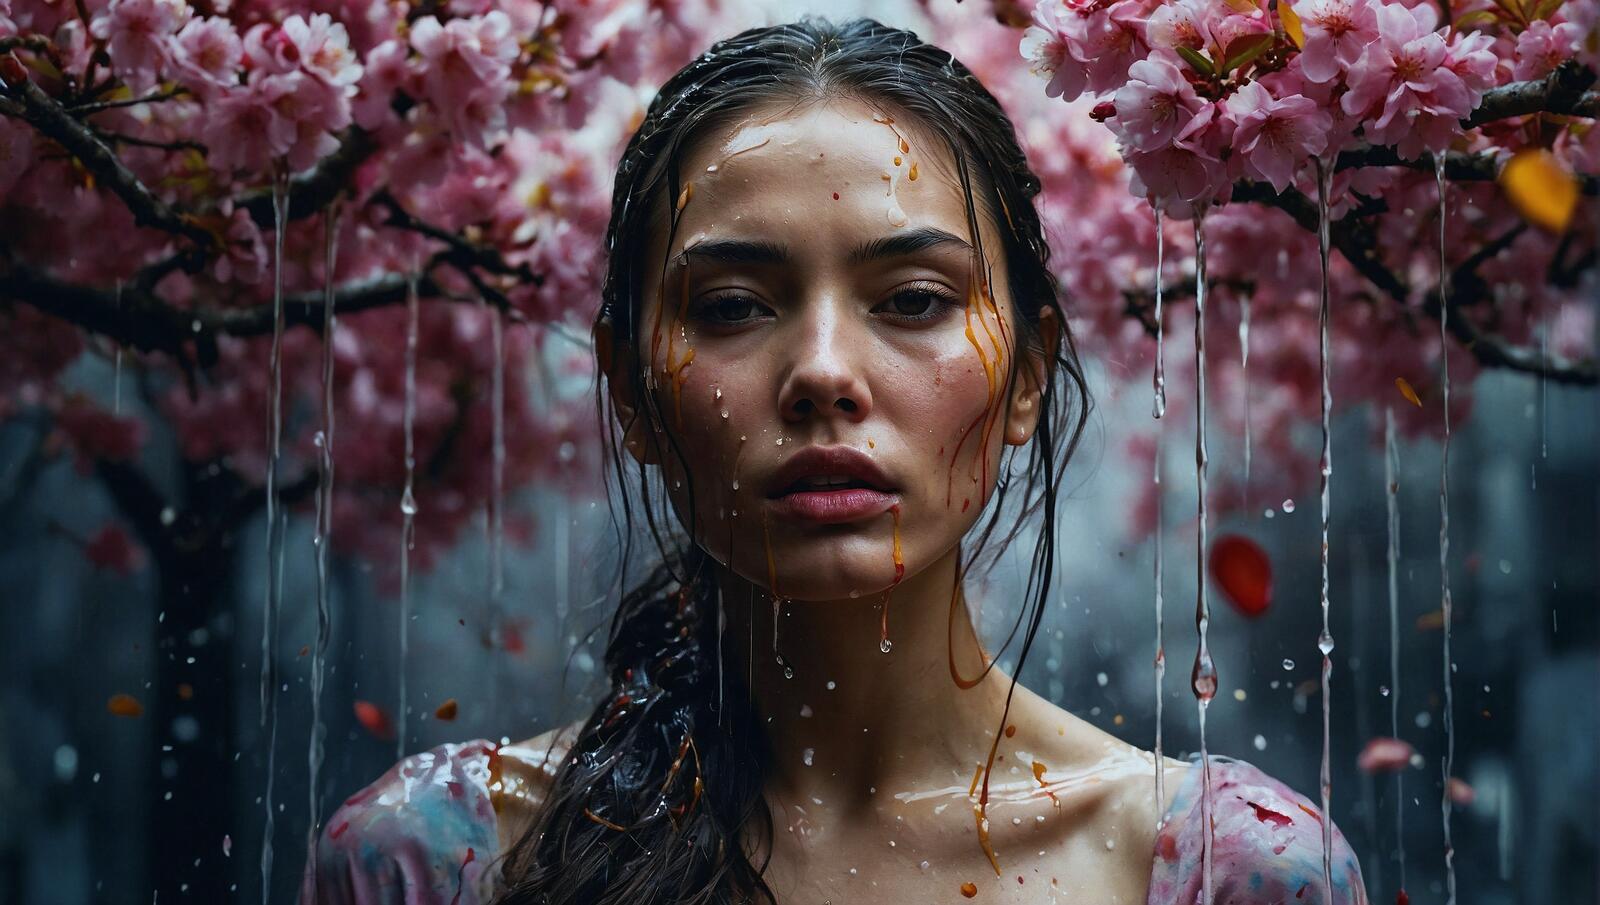 Бесплатное фото Женщина стоит под деревом, покрытым дождем, и смотрит сердито